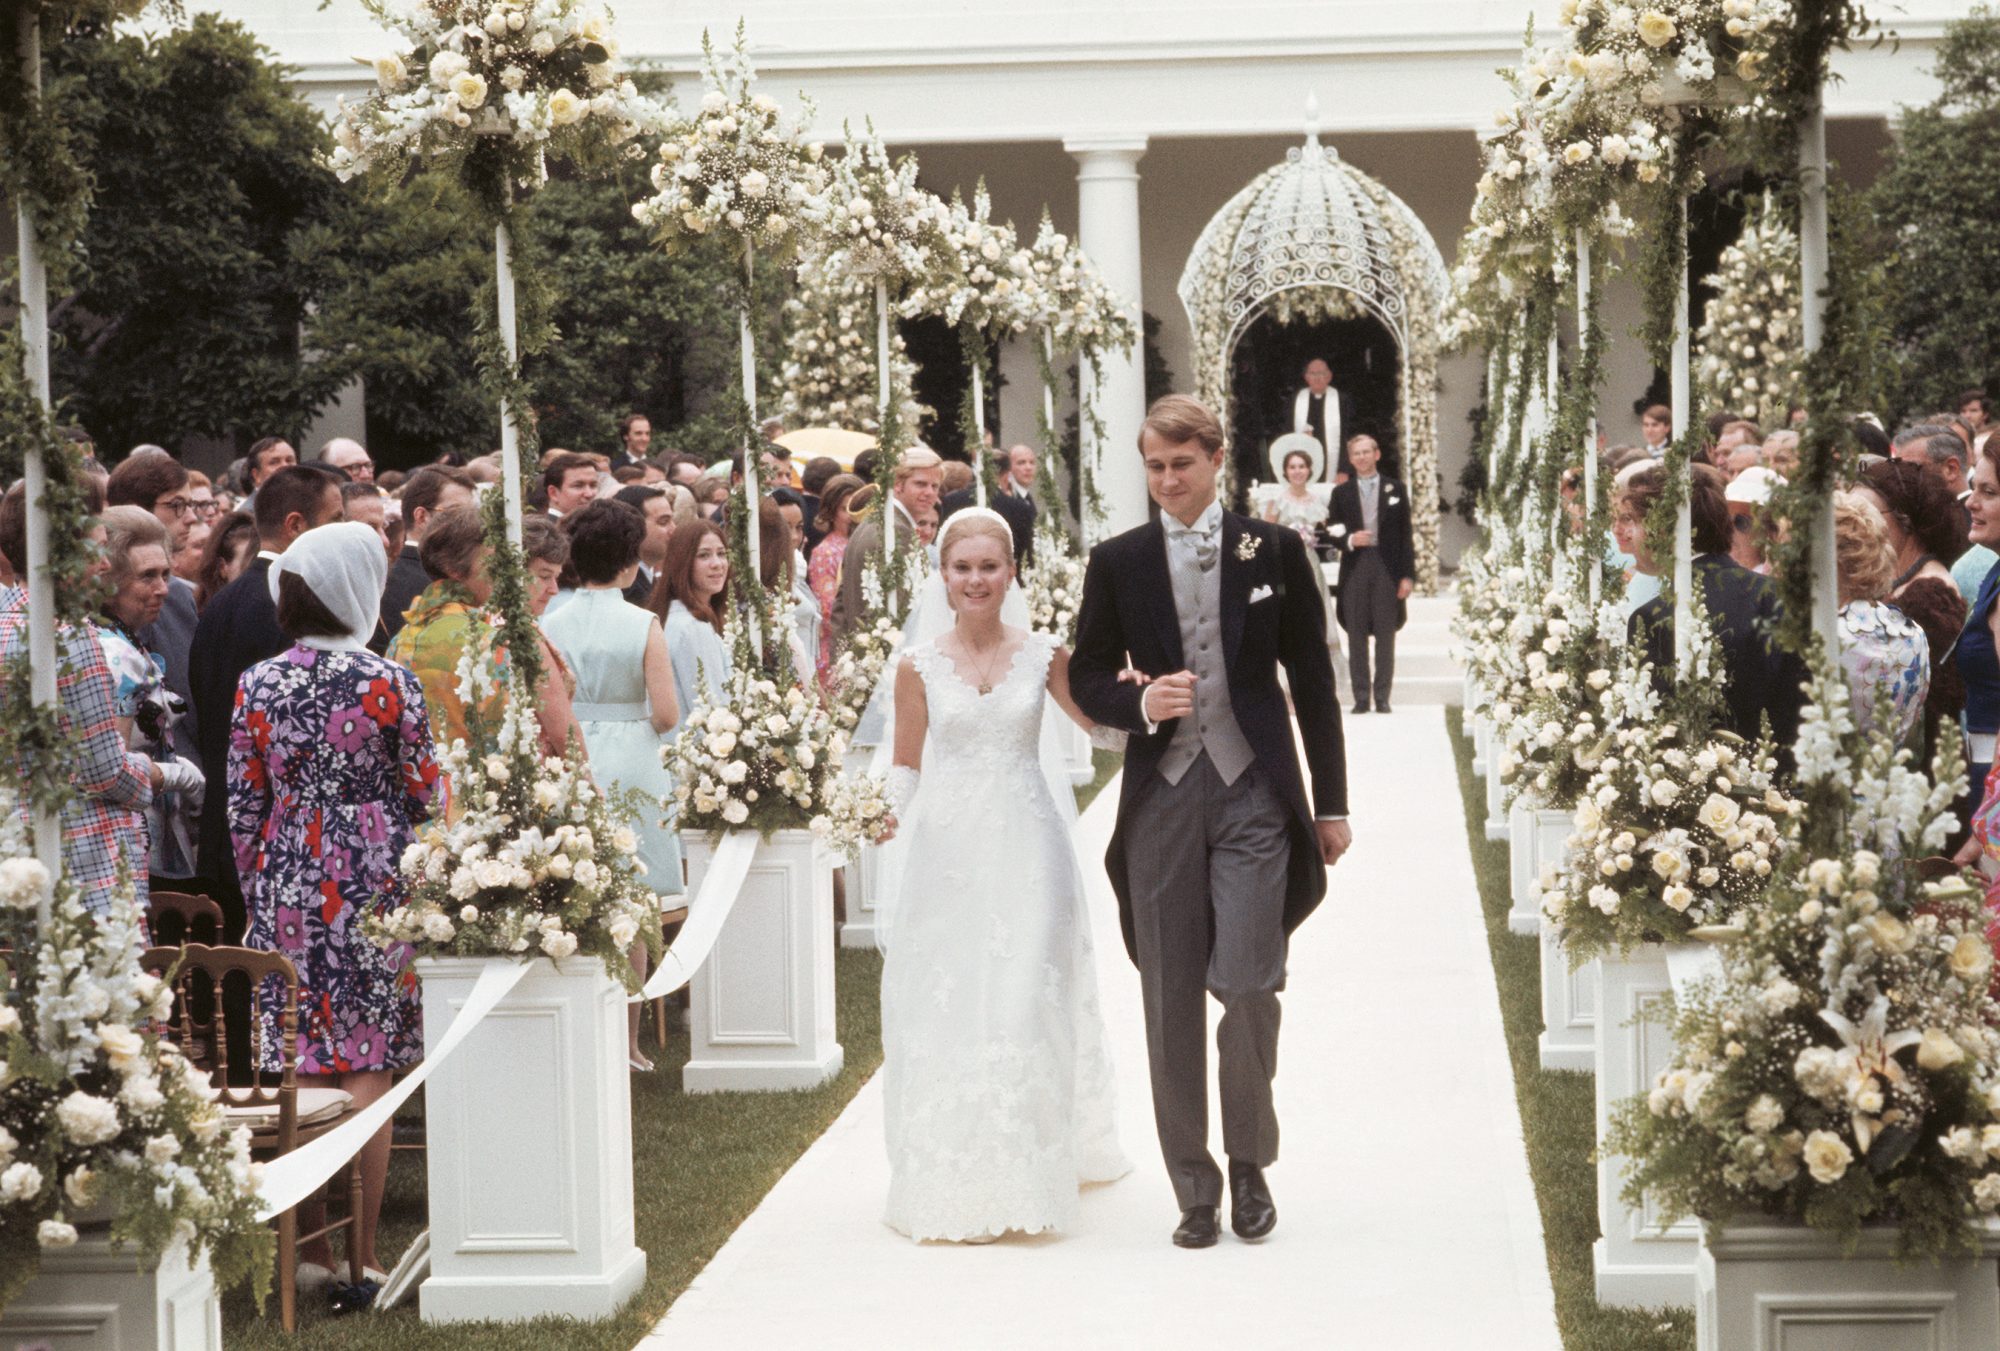 Hôn lễ ở Nhà Trắng hiếm hoi trong nhiều thập kỷ: Cháu nội xinh đẹp nhất của Tổng thống Biden tuyên bố làm đám cưới với hôn phu “cực phẩm” - Ảnh 3.